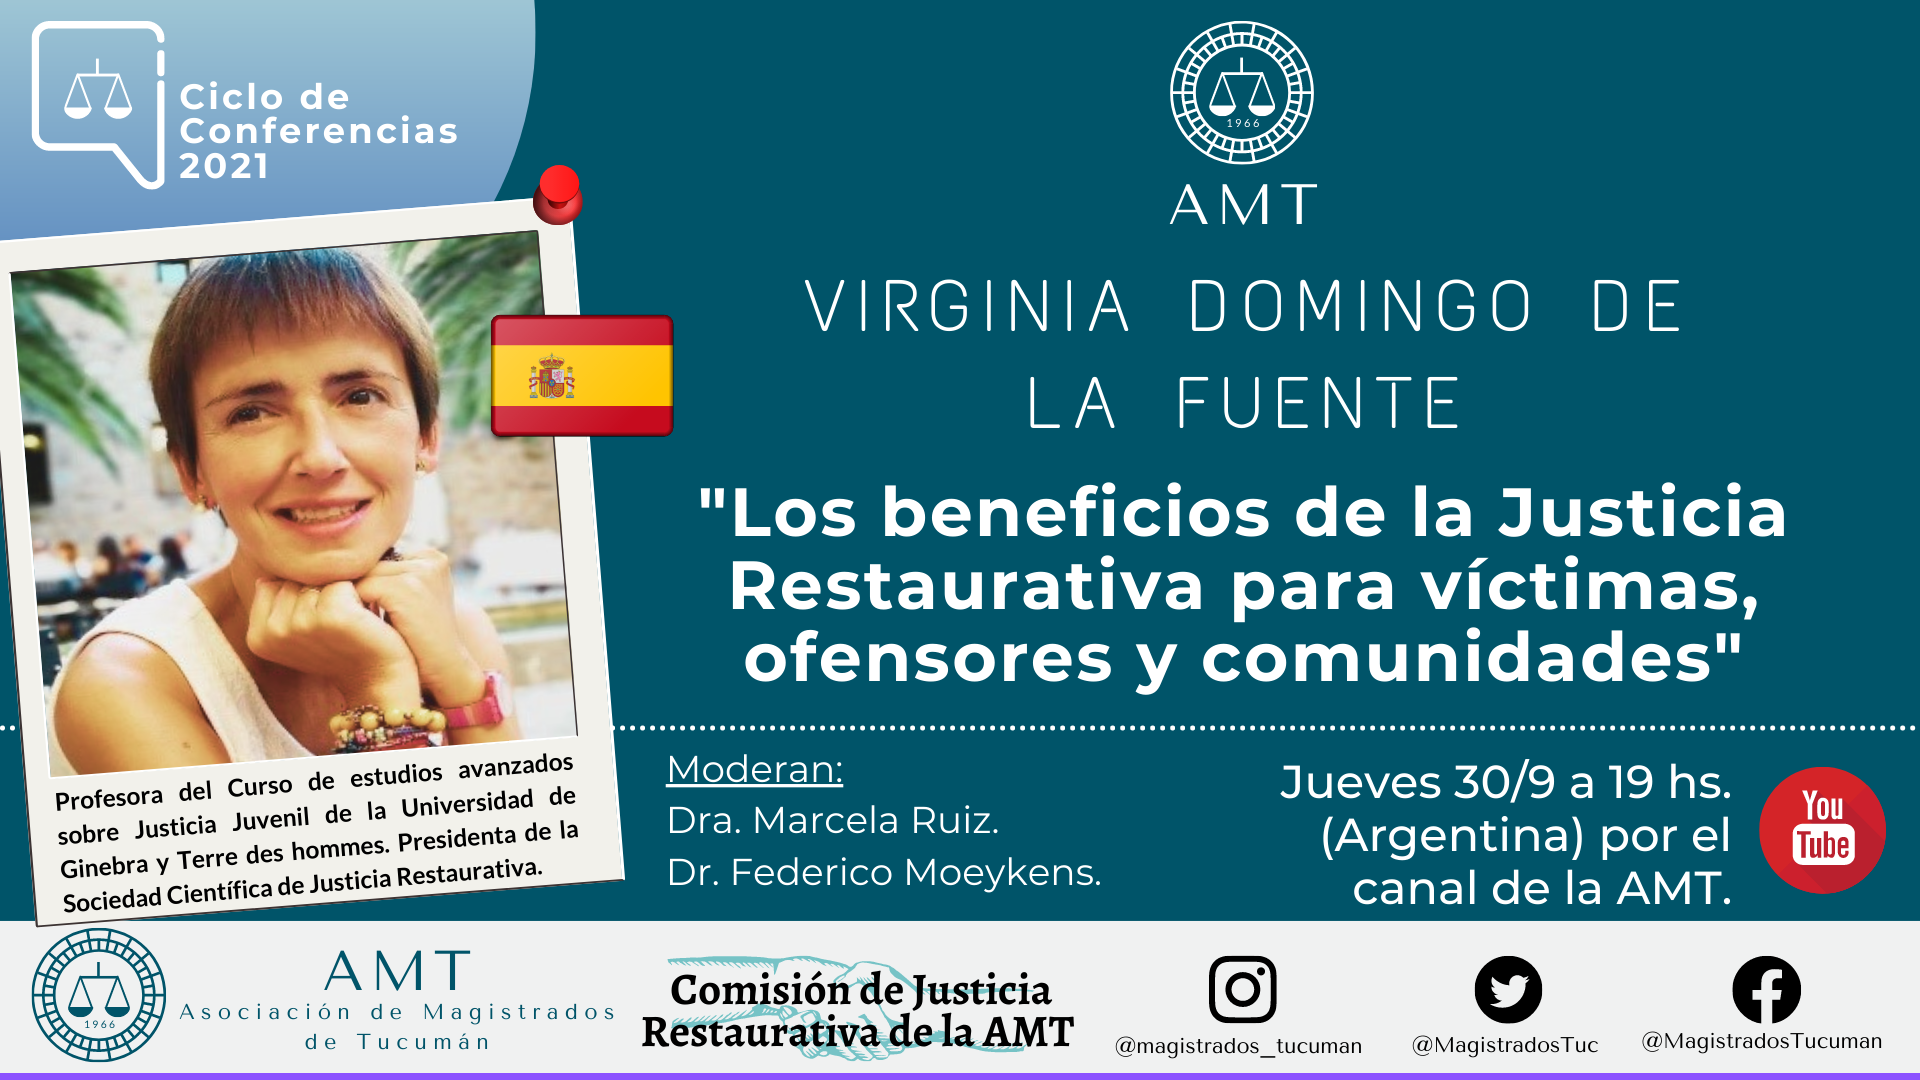 Vuelva a ver la conferencia de Virginia Domingo de la Fuente «Los beneficios de la Justicia Restaurativa»